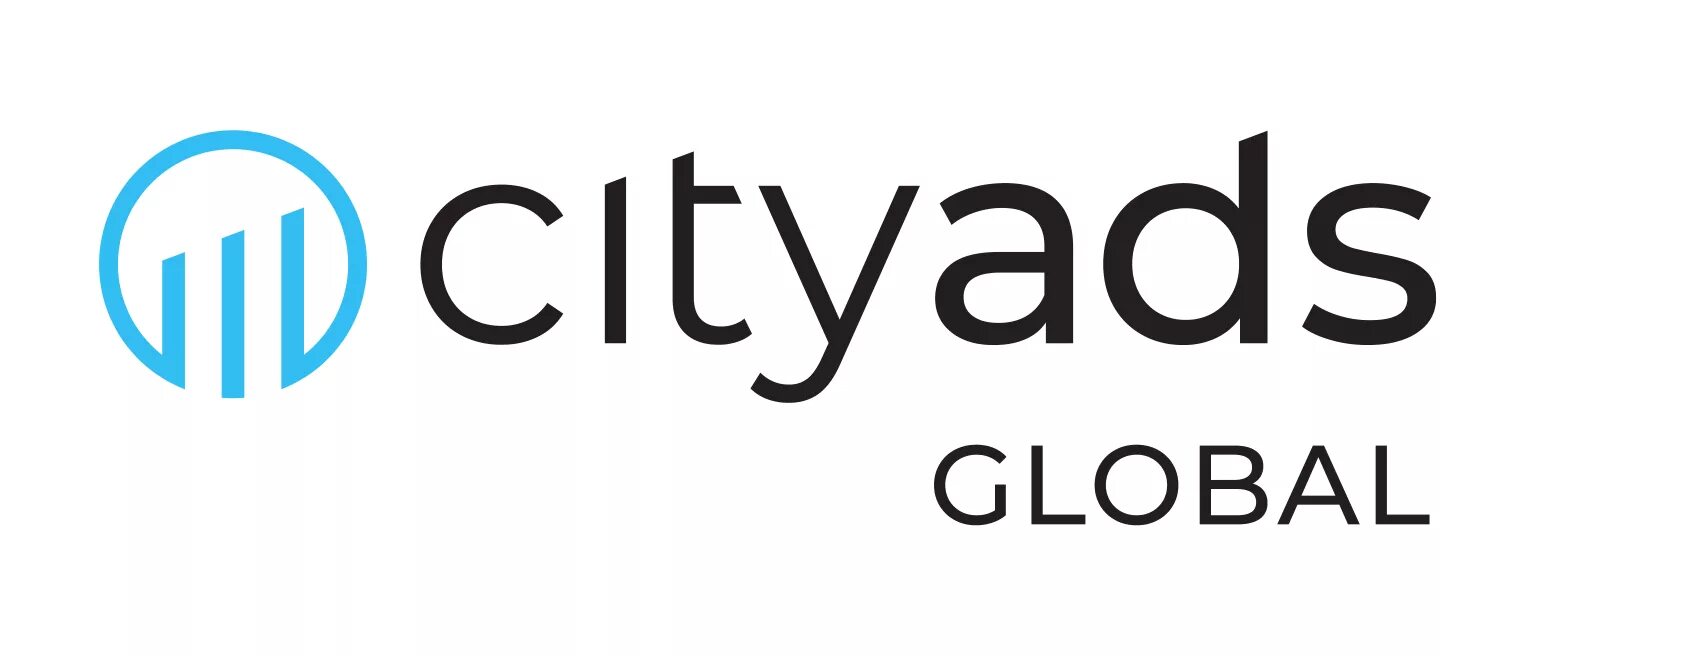 Тегми. Cityads. Cityads logo. Партнерская программа cityads. Ситиэдс 1.